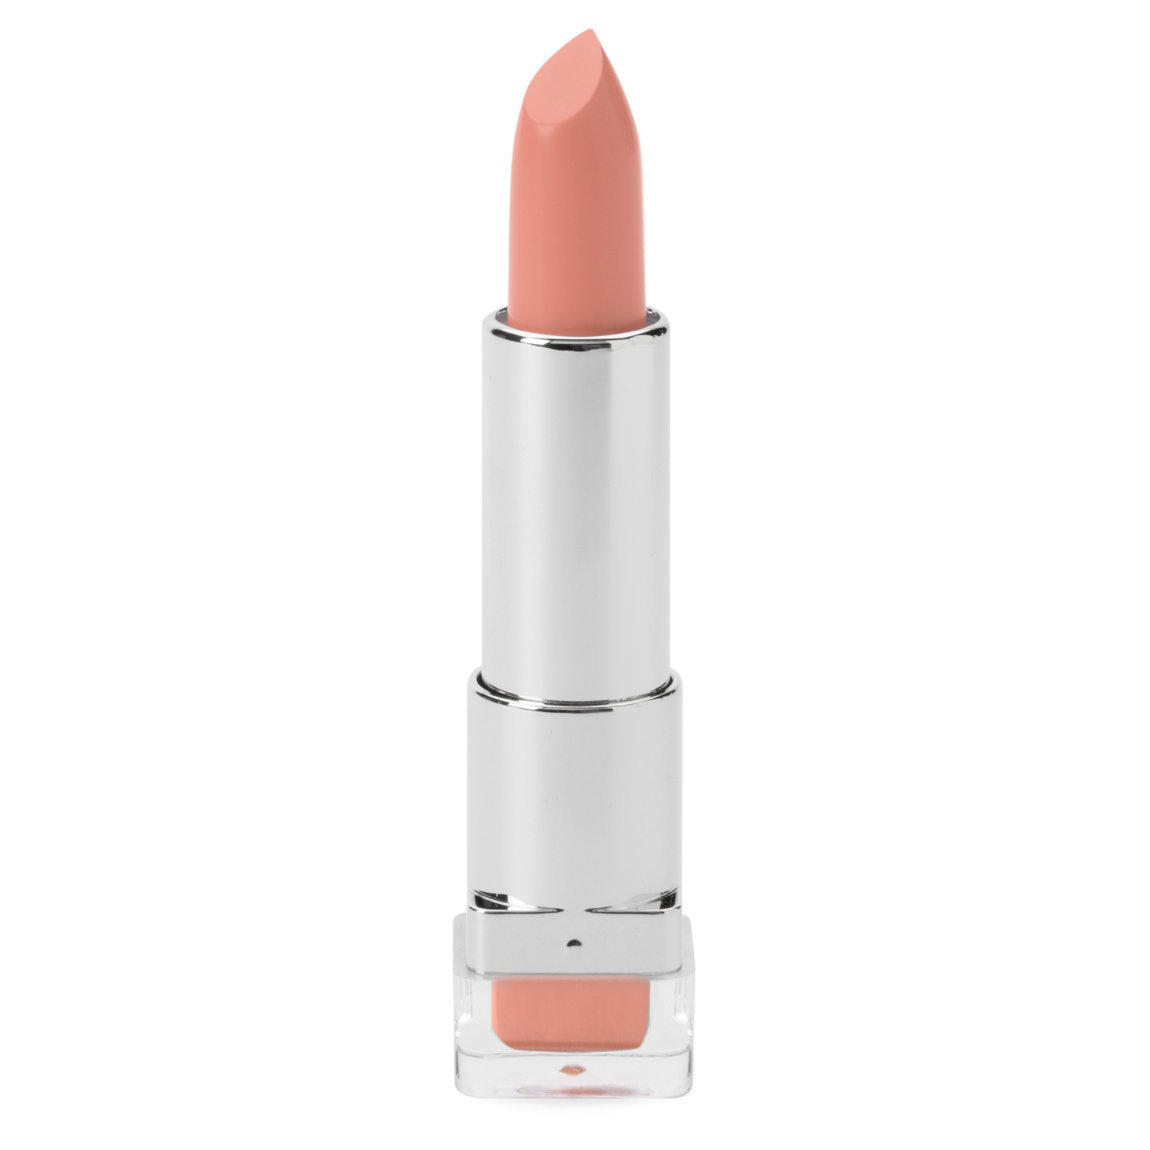 Natasha Denona Shiny Lip Color Peachy Nude 15